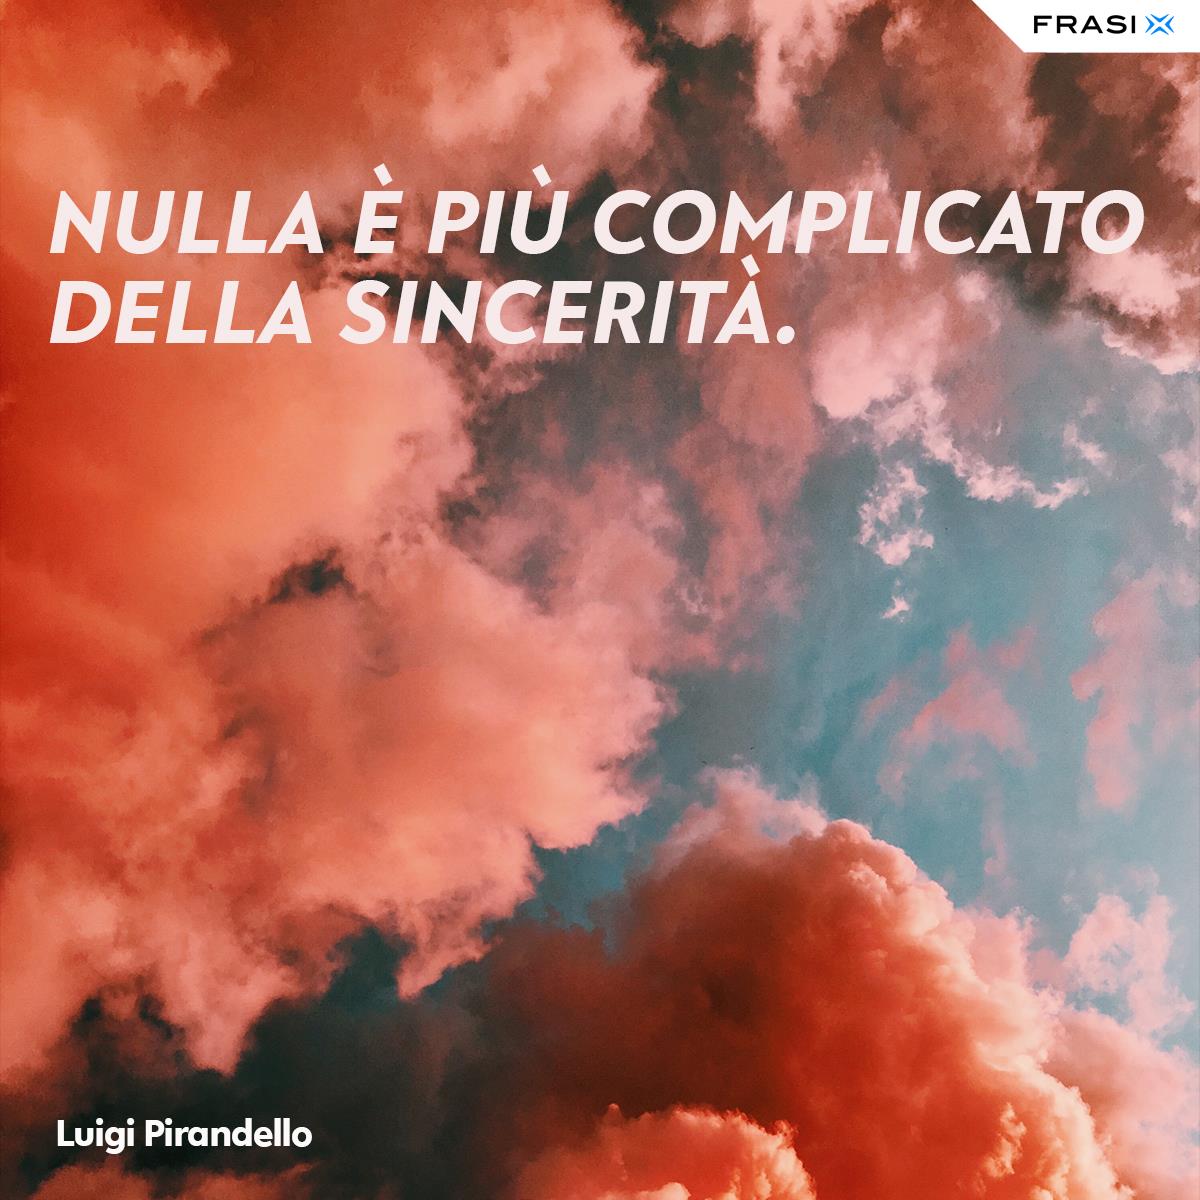 Immagine nuvole con frase sulla sincerità di Luigi Pirandello